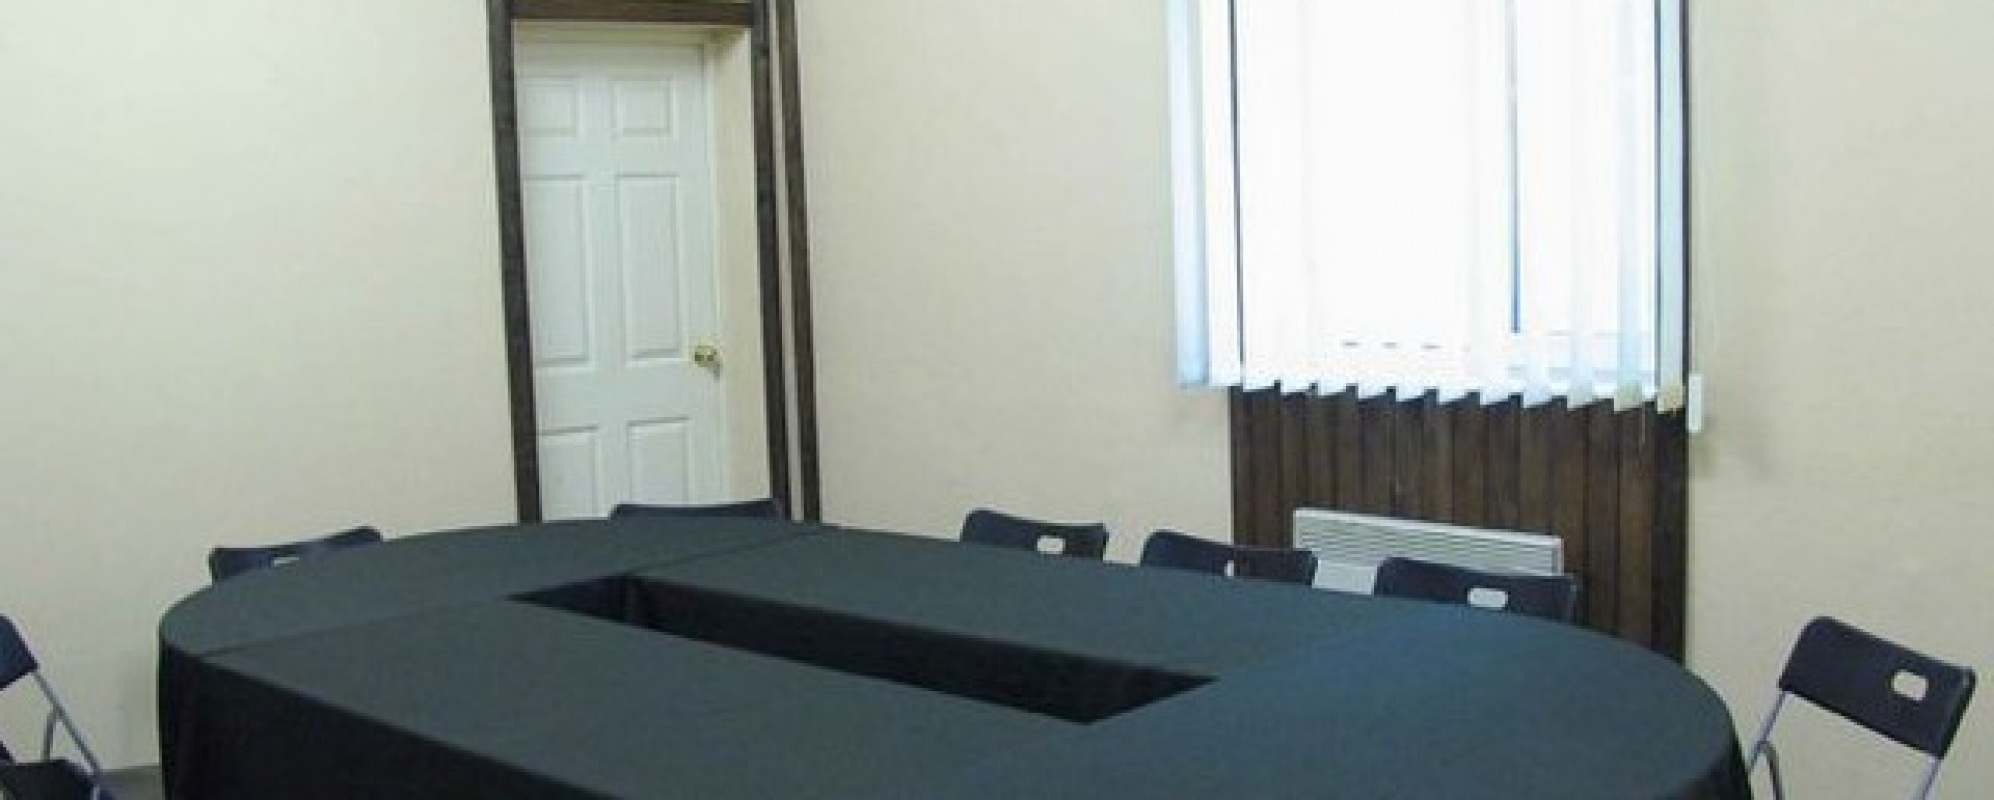 Фотографии комнаты для переговоров Акварели